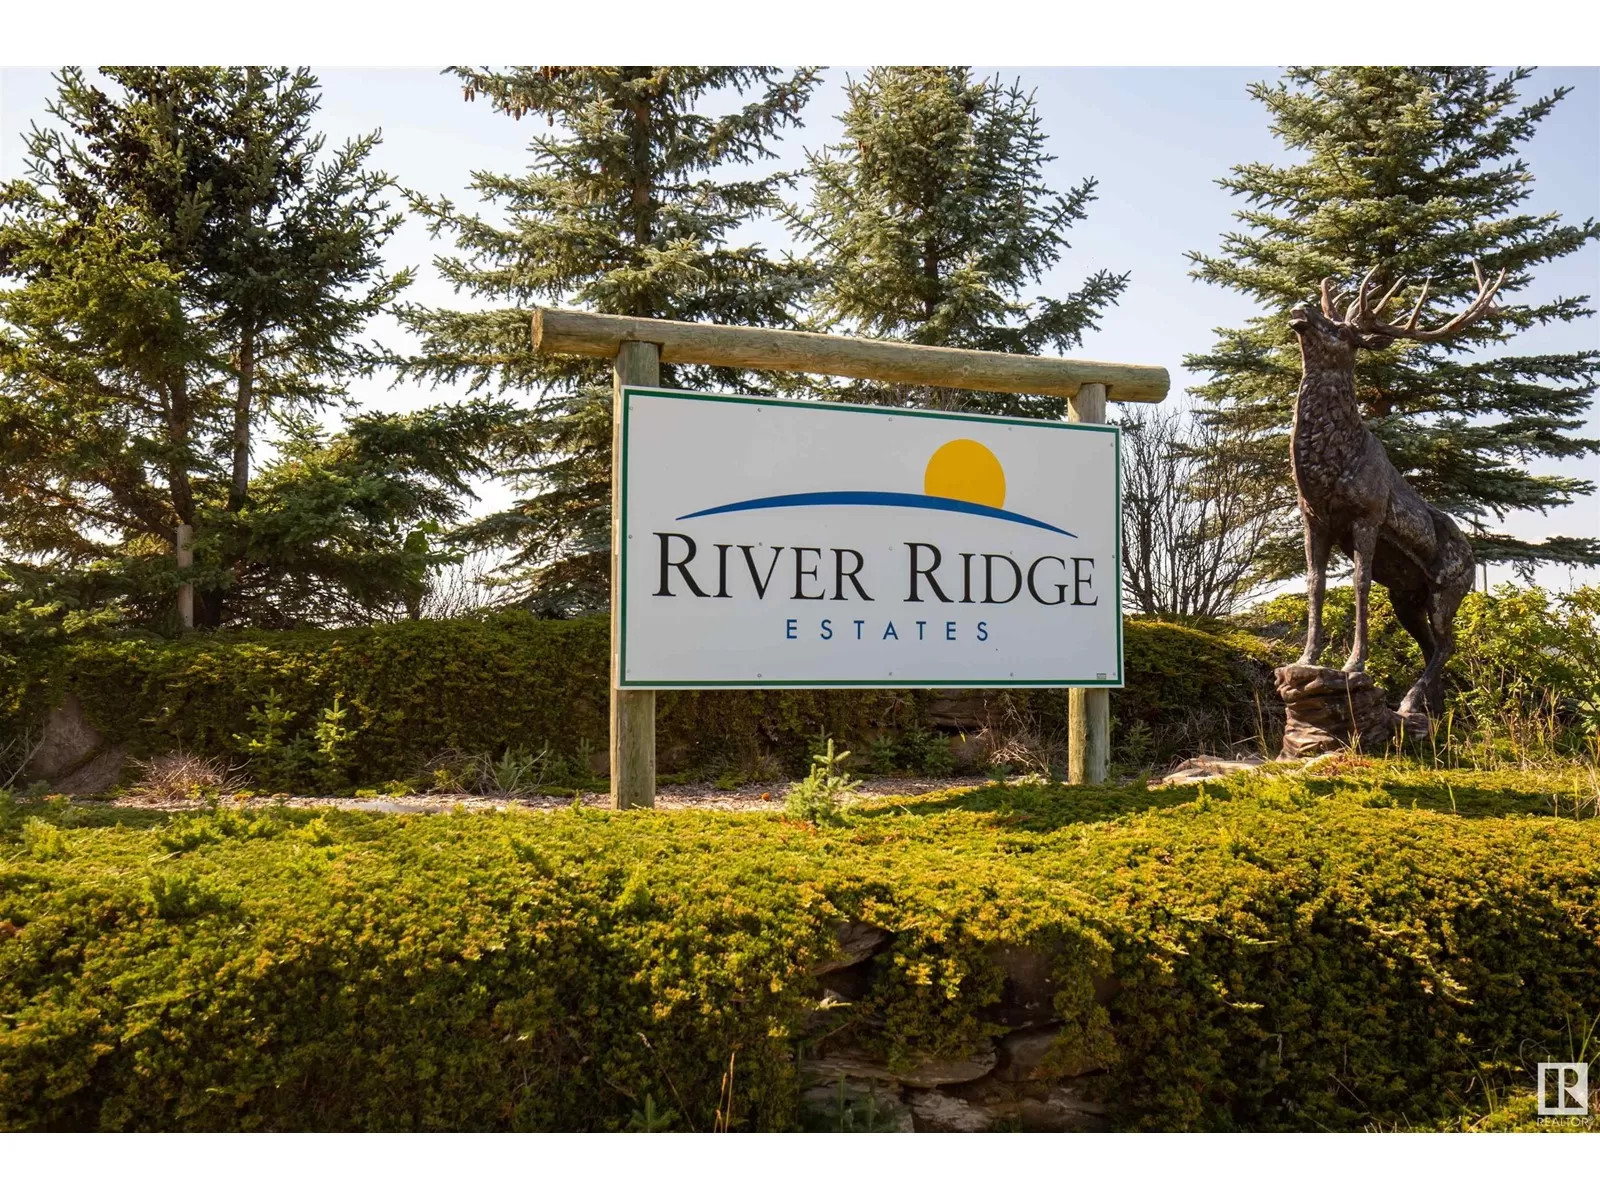 No Building for rent: 2 River Ridge Es, Rural Wetaskiwin County, Alberta T0C 2V0